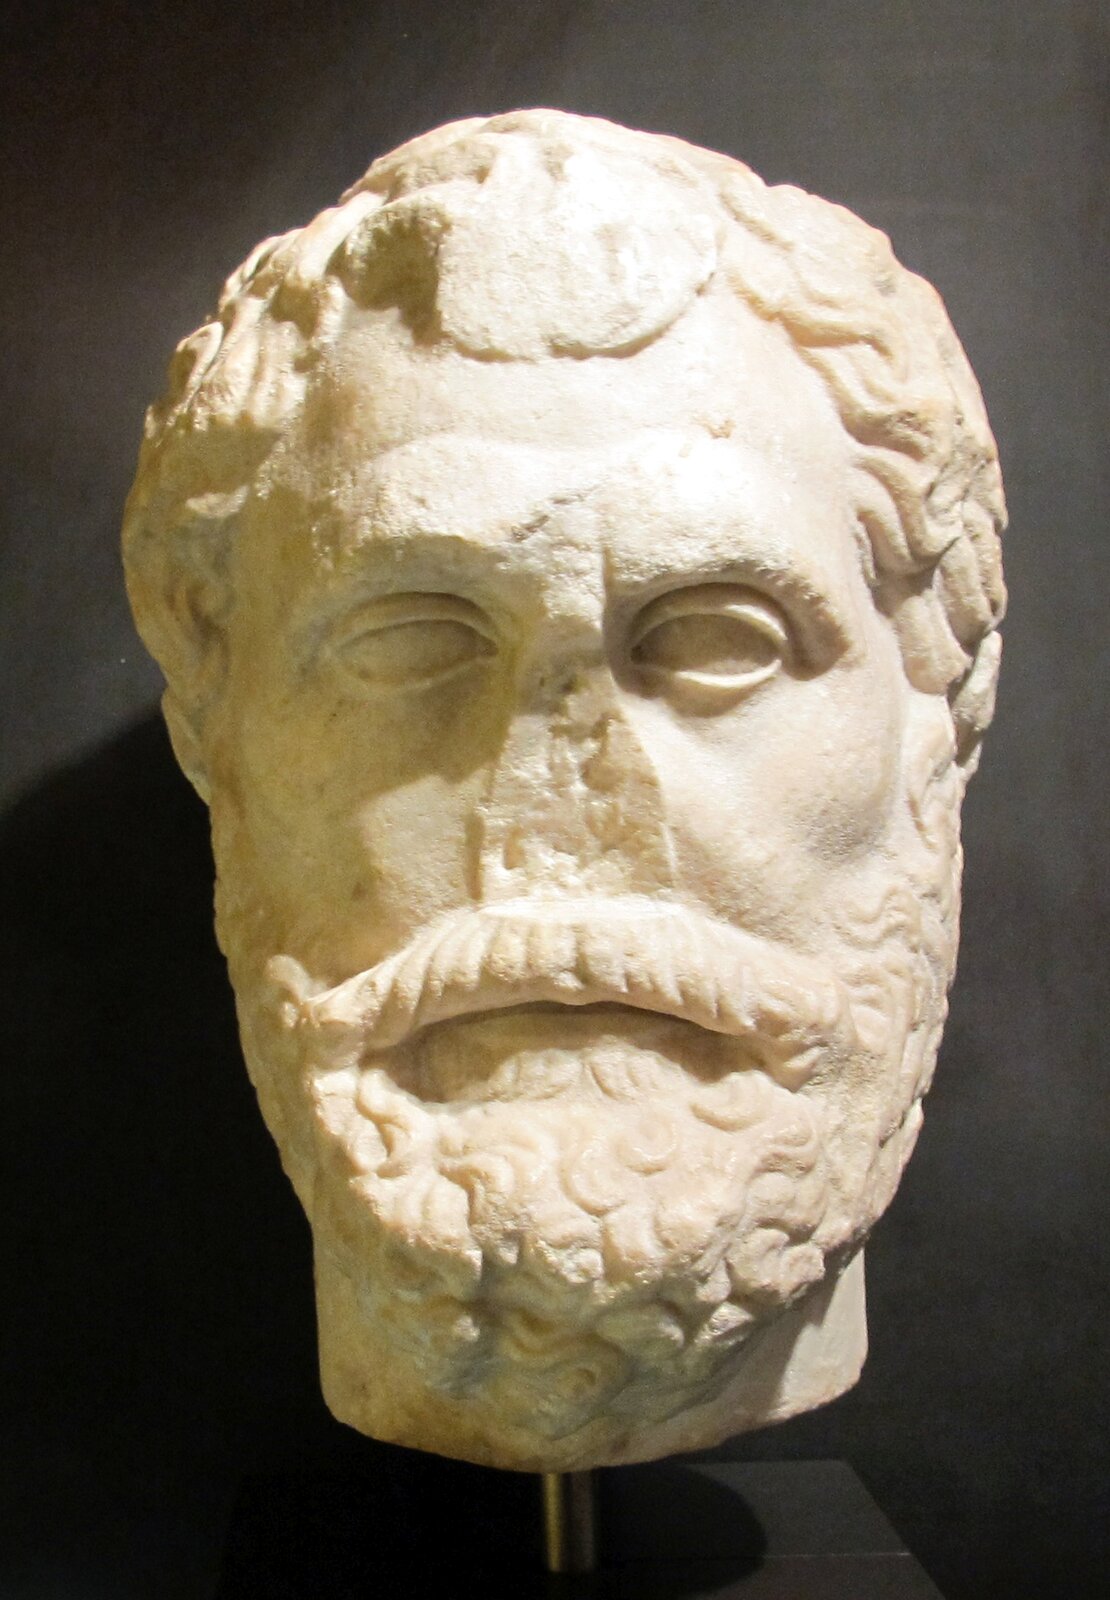 Ilustracja przedstawia rzeźbę wykonaną z białego marmuru. Jest to głowa Talesa z Miletu. Uczony ukazany jest jako dojrzały mężczyzna. Ma pociągłą twarz, krótkie włosy oraz zarost. Rzeźba jest częściowo uszkodzona – ma utrącony nos.